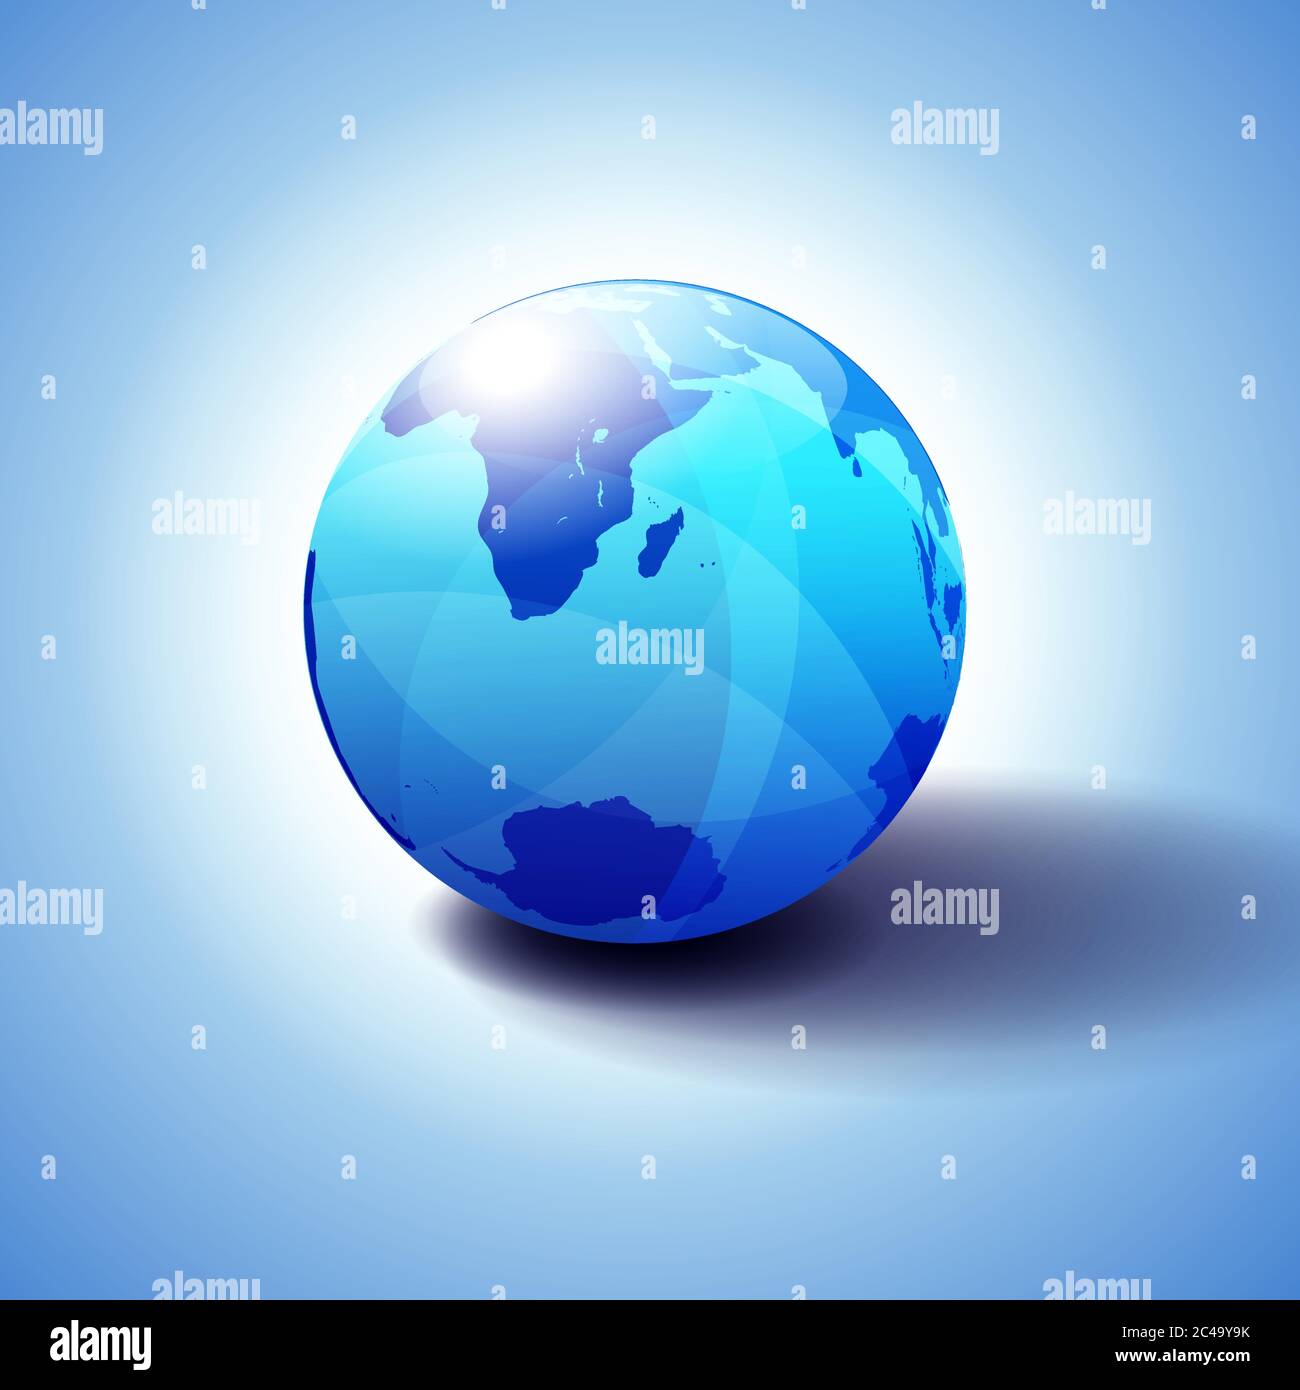 Südafrika, Madagaskar und der Südpol, Globe Icon 3D-Illustration, glänzende, glänzende Kugel mit Global Map in Subtle Blues, die ein transparentes fe gibt Stock Vektor